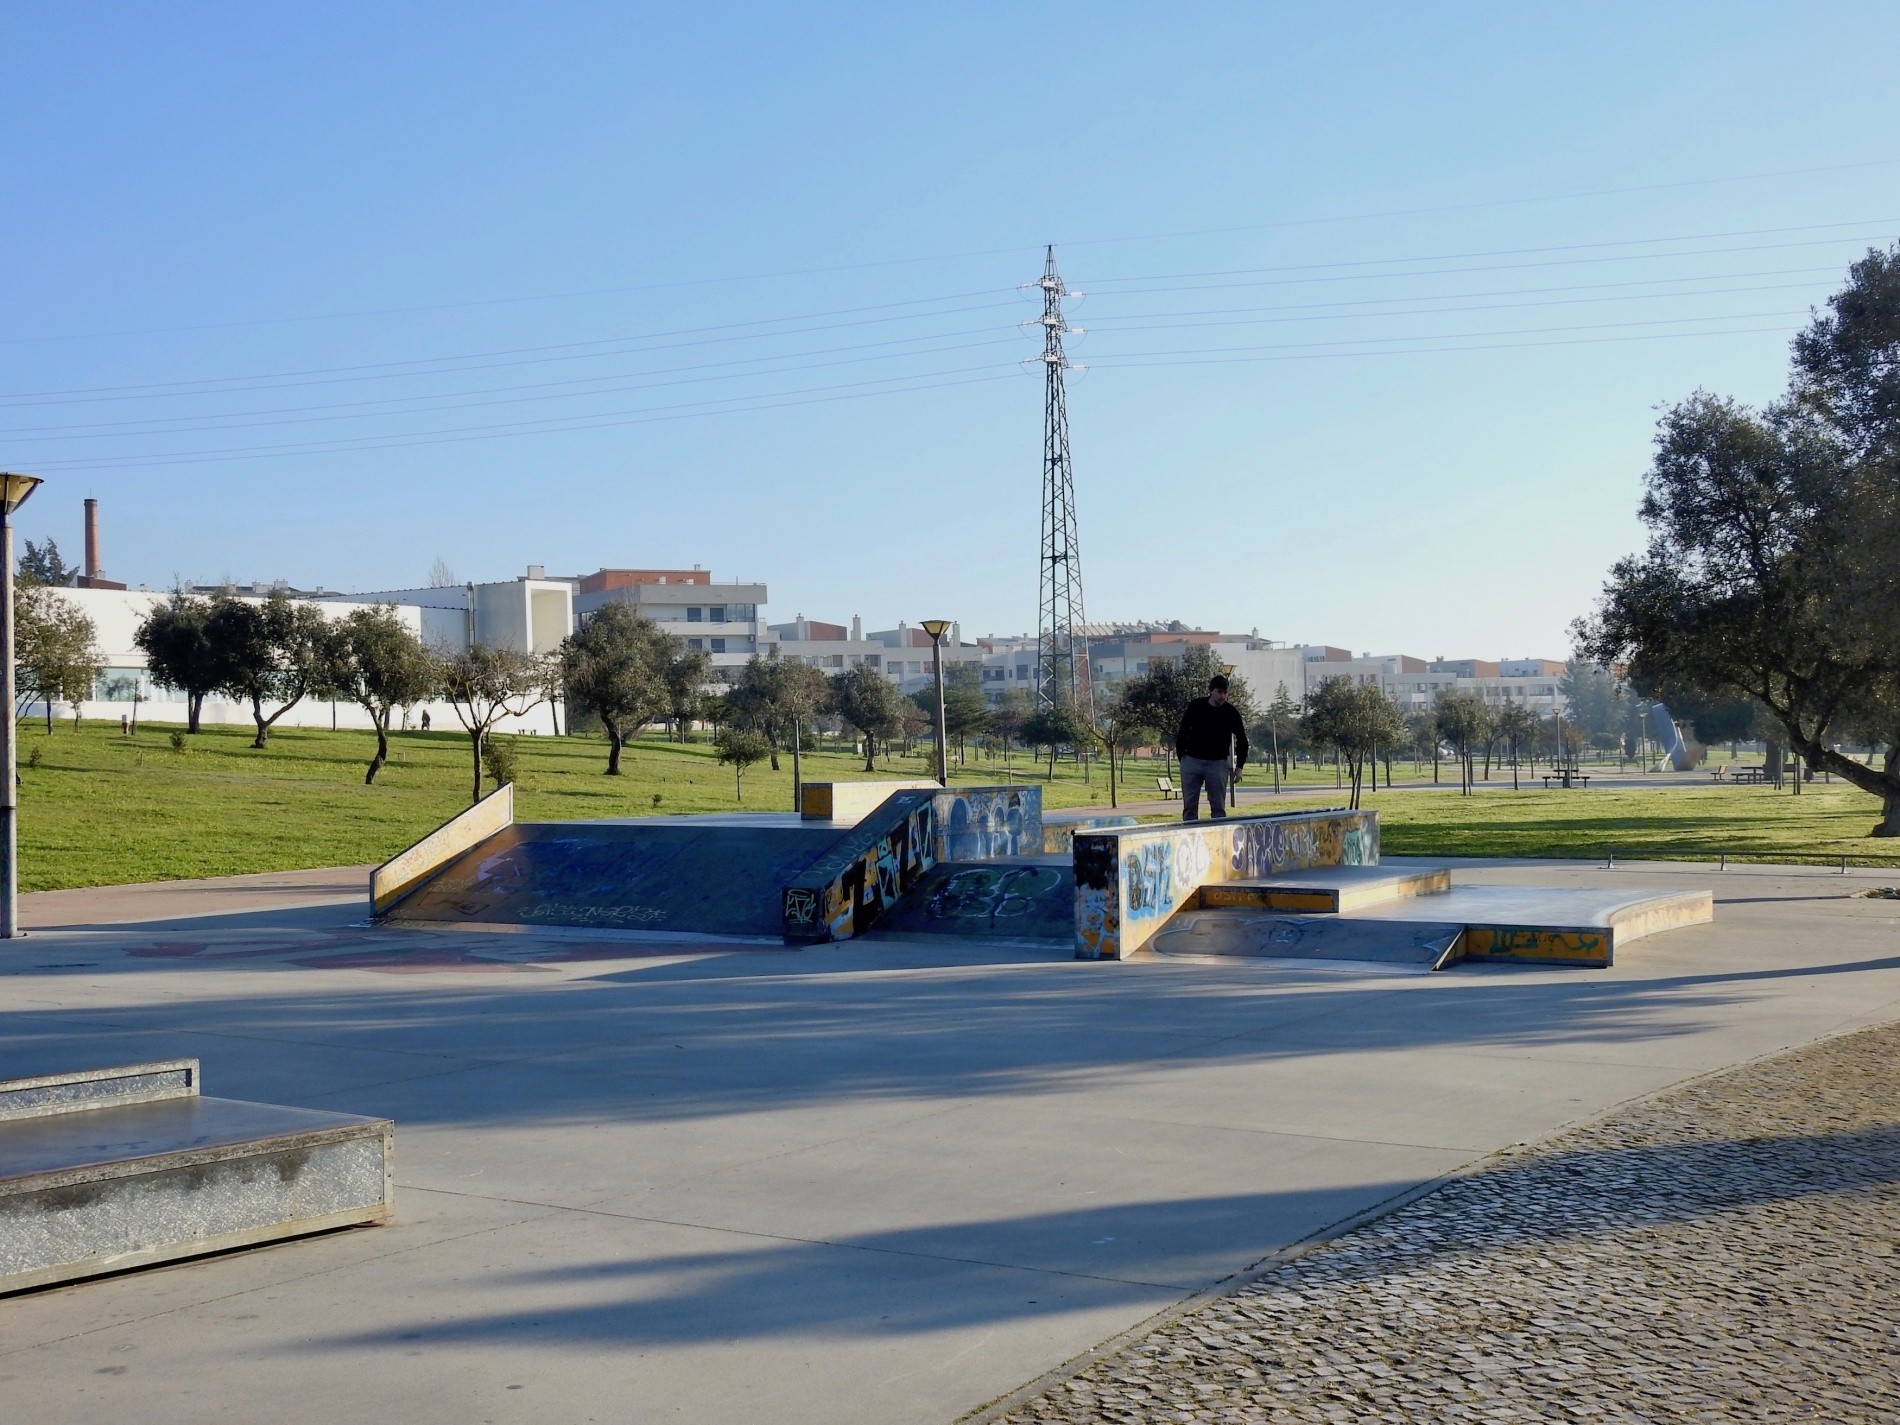 Sobreda skatepark